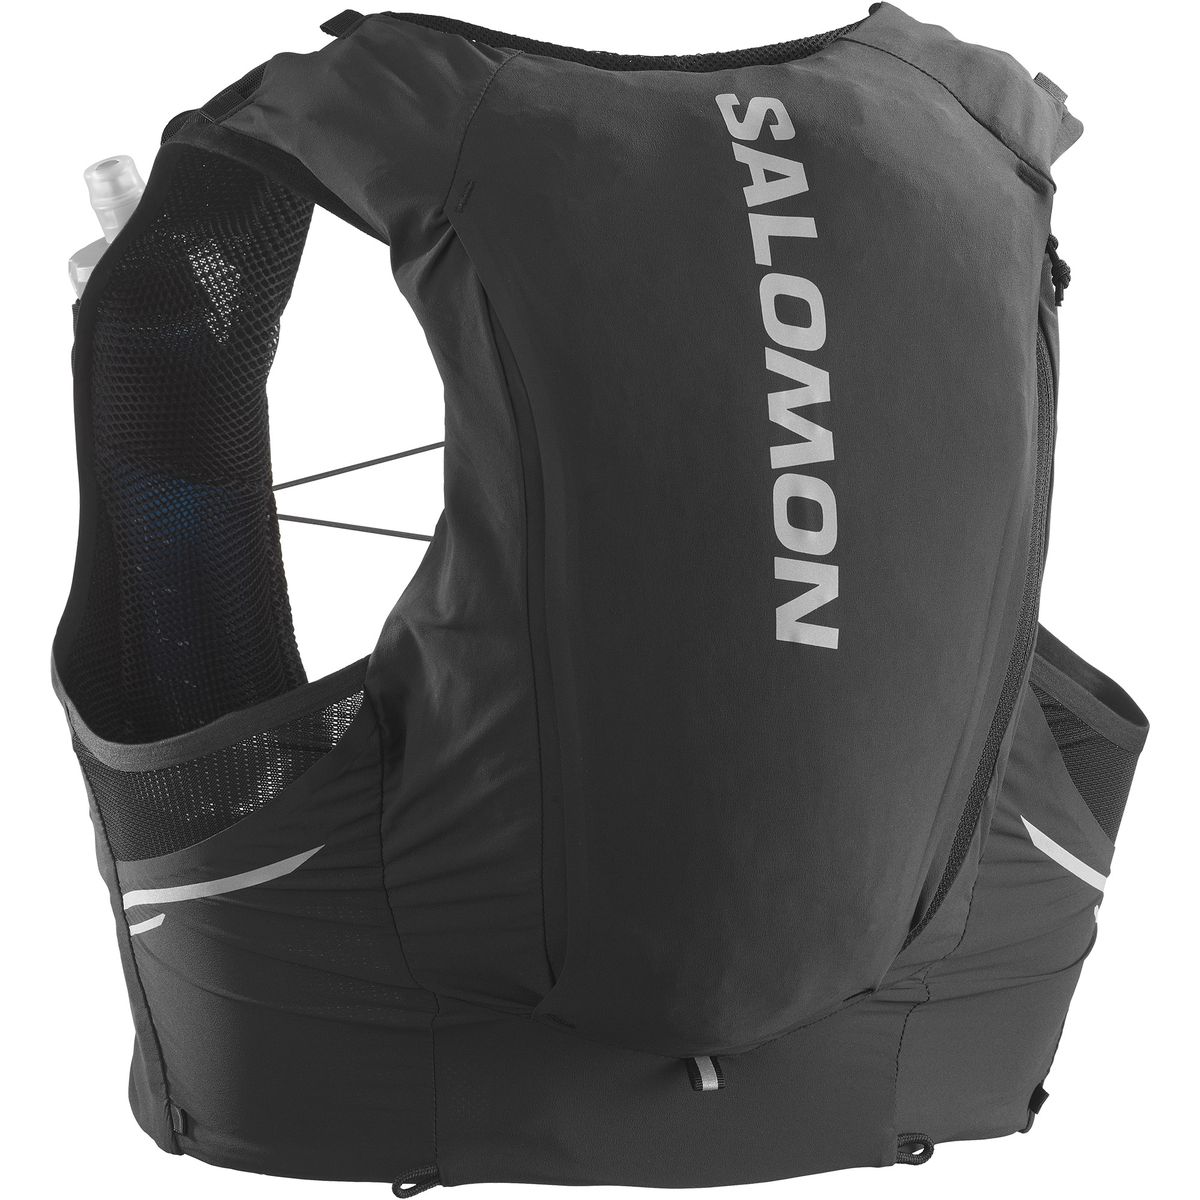 Salomon Sense Pro 10 Runningrucksack